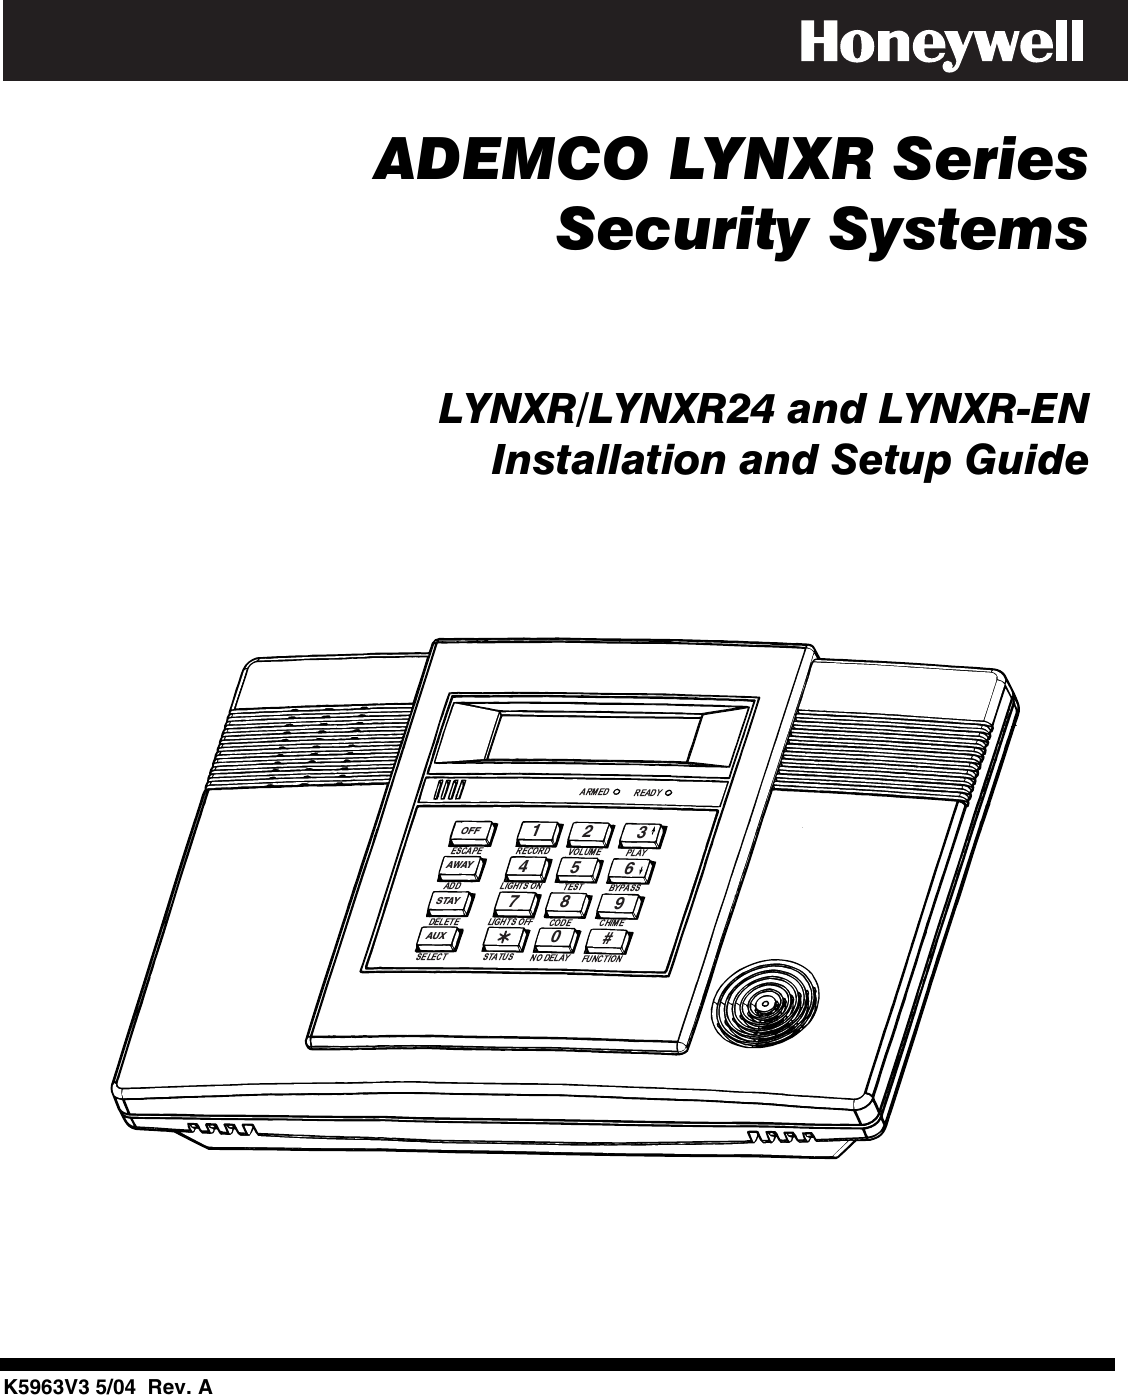        ADEMCO LYNXR Series   Security Systems         LYNXR/LYNXR24 and LYNXR-EN  Installation and Setup Guide      AWAYOFFSTAYAUX4567890#123          K5963V3 5/04  Rev. A